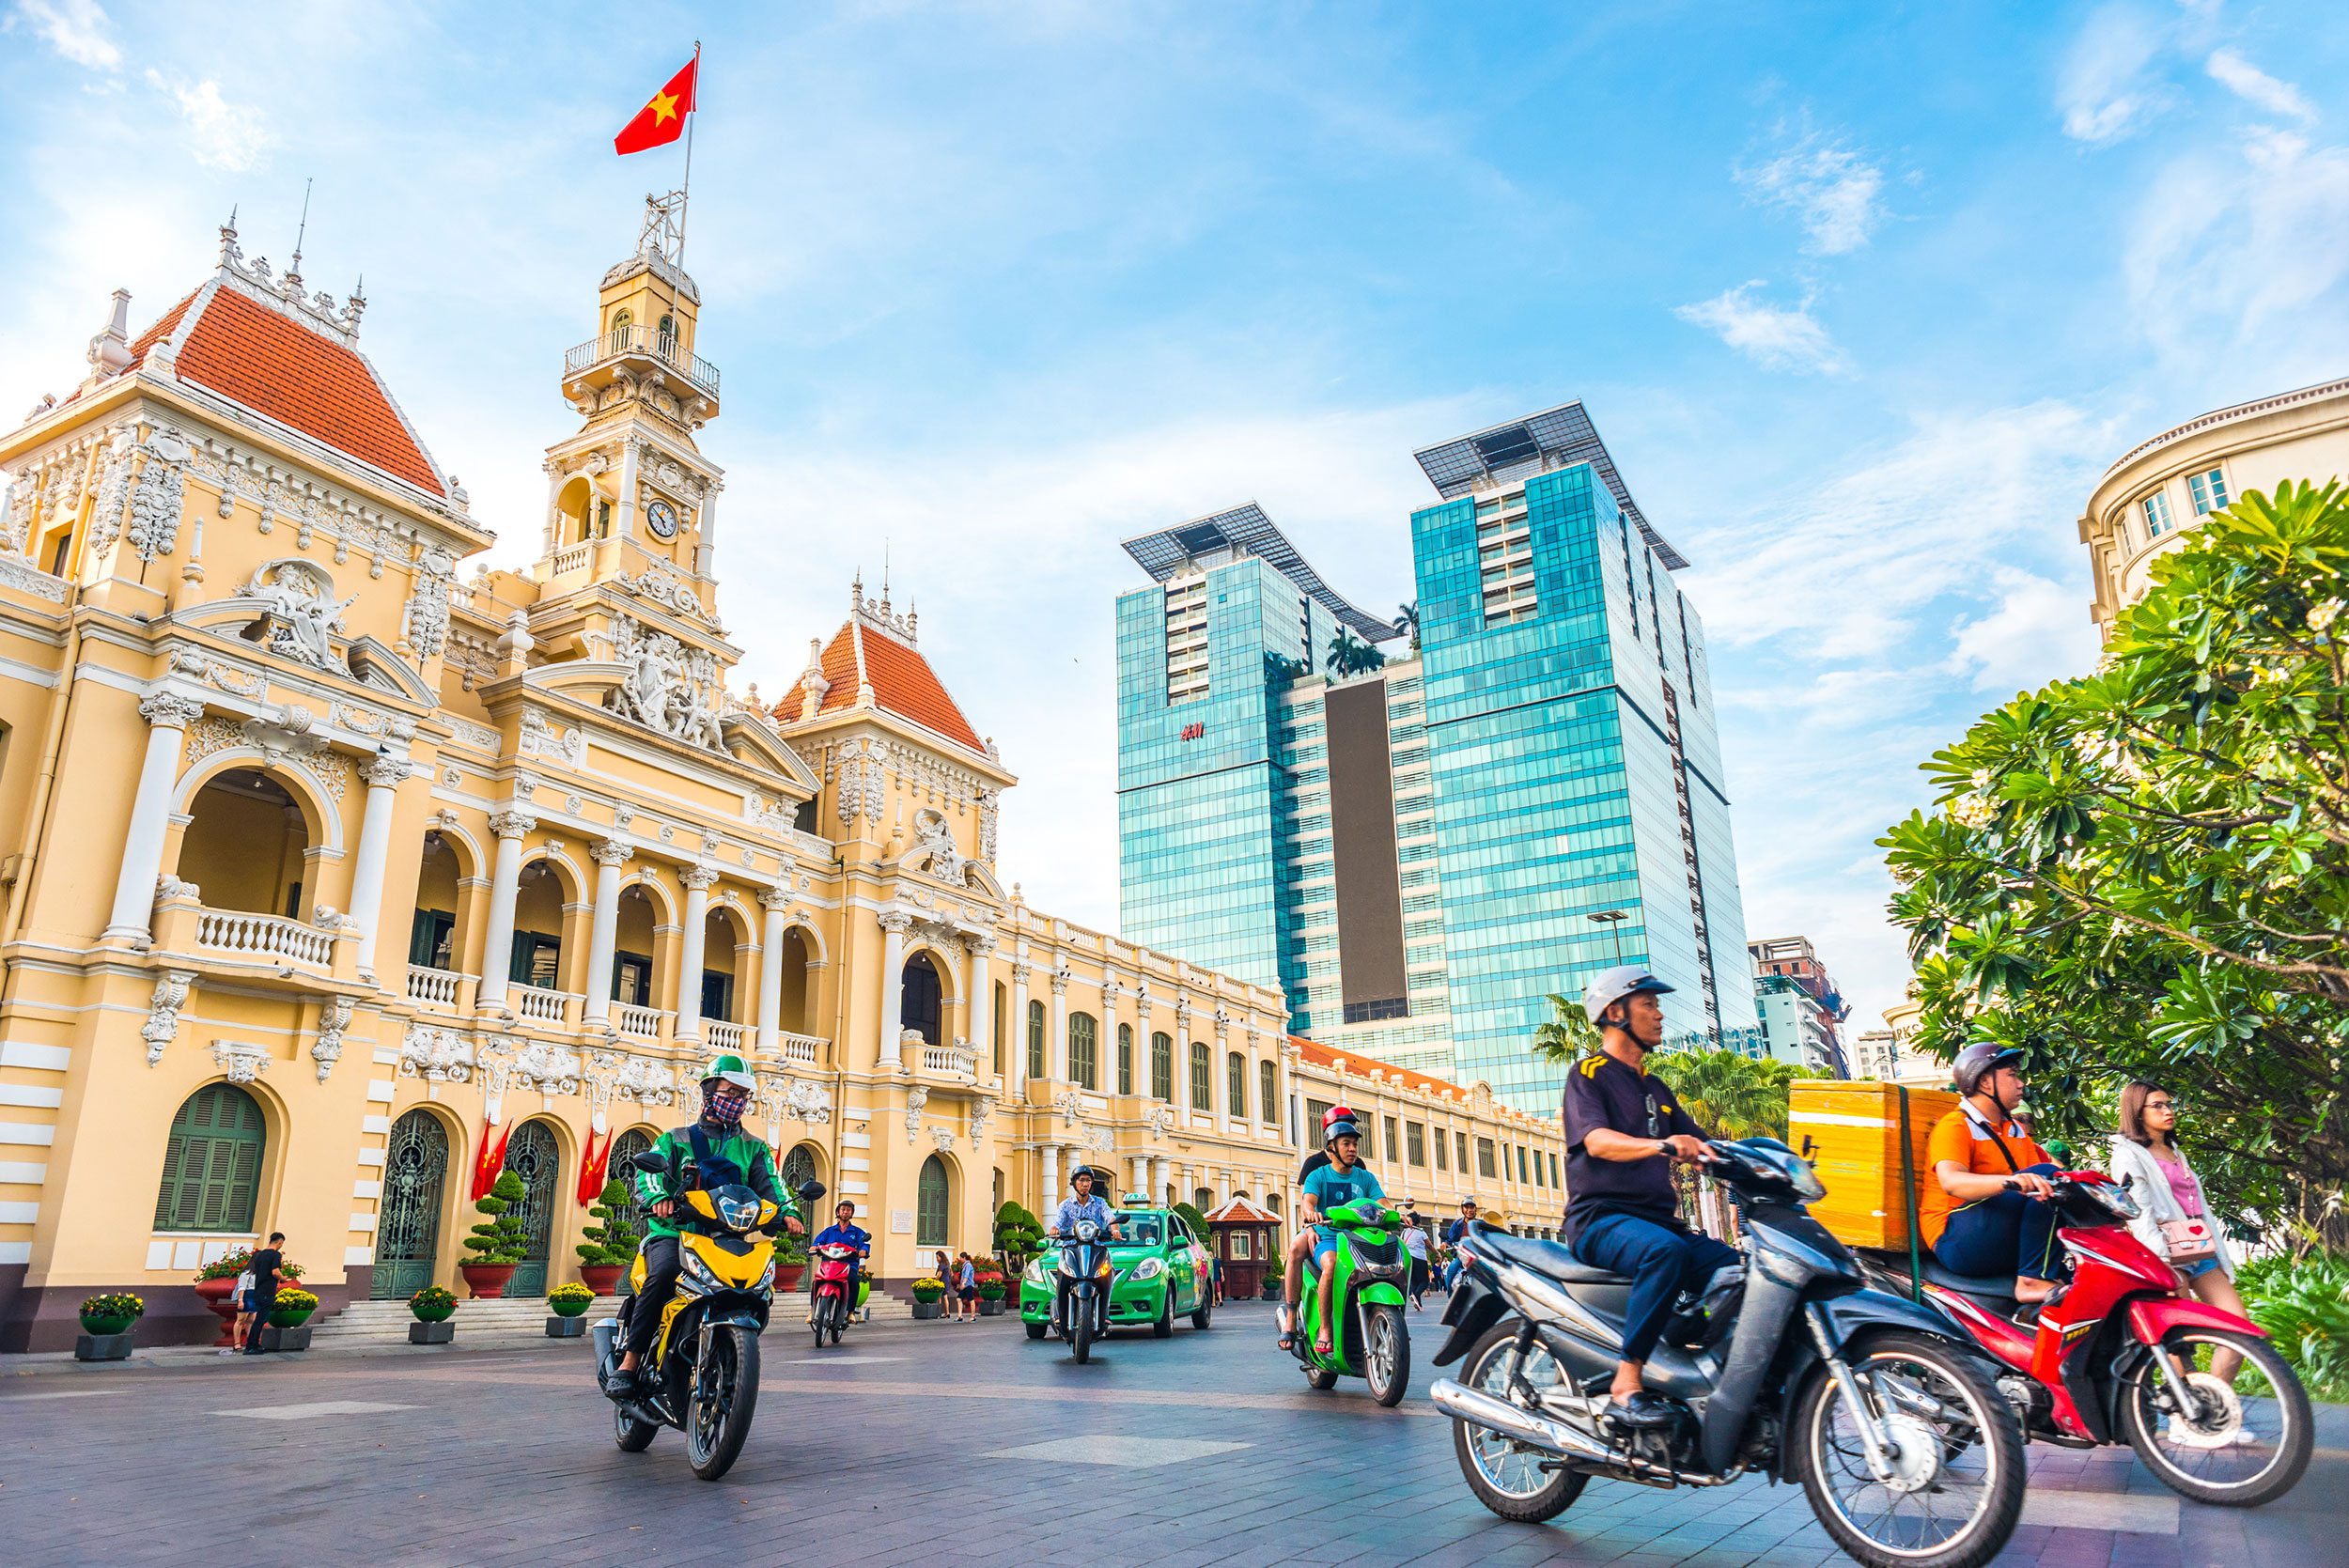 Chào mừng đến với Thành phố Hồ Chí Minh!